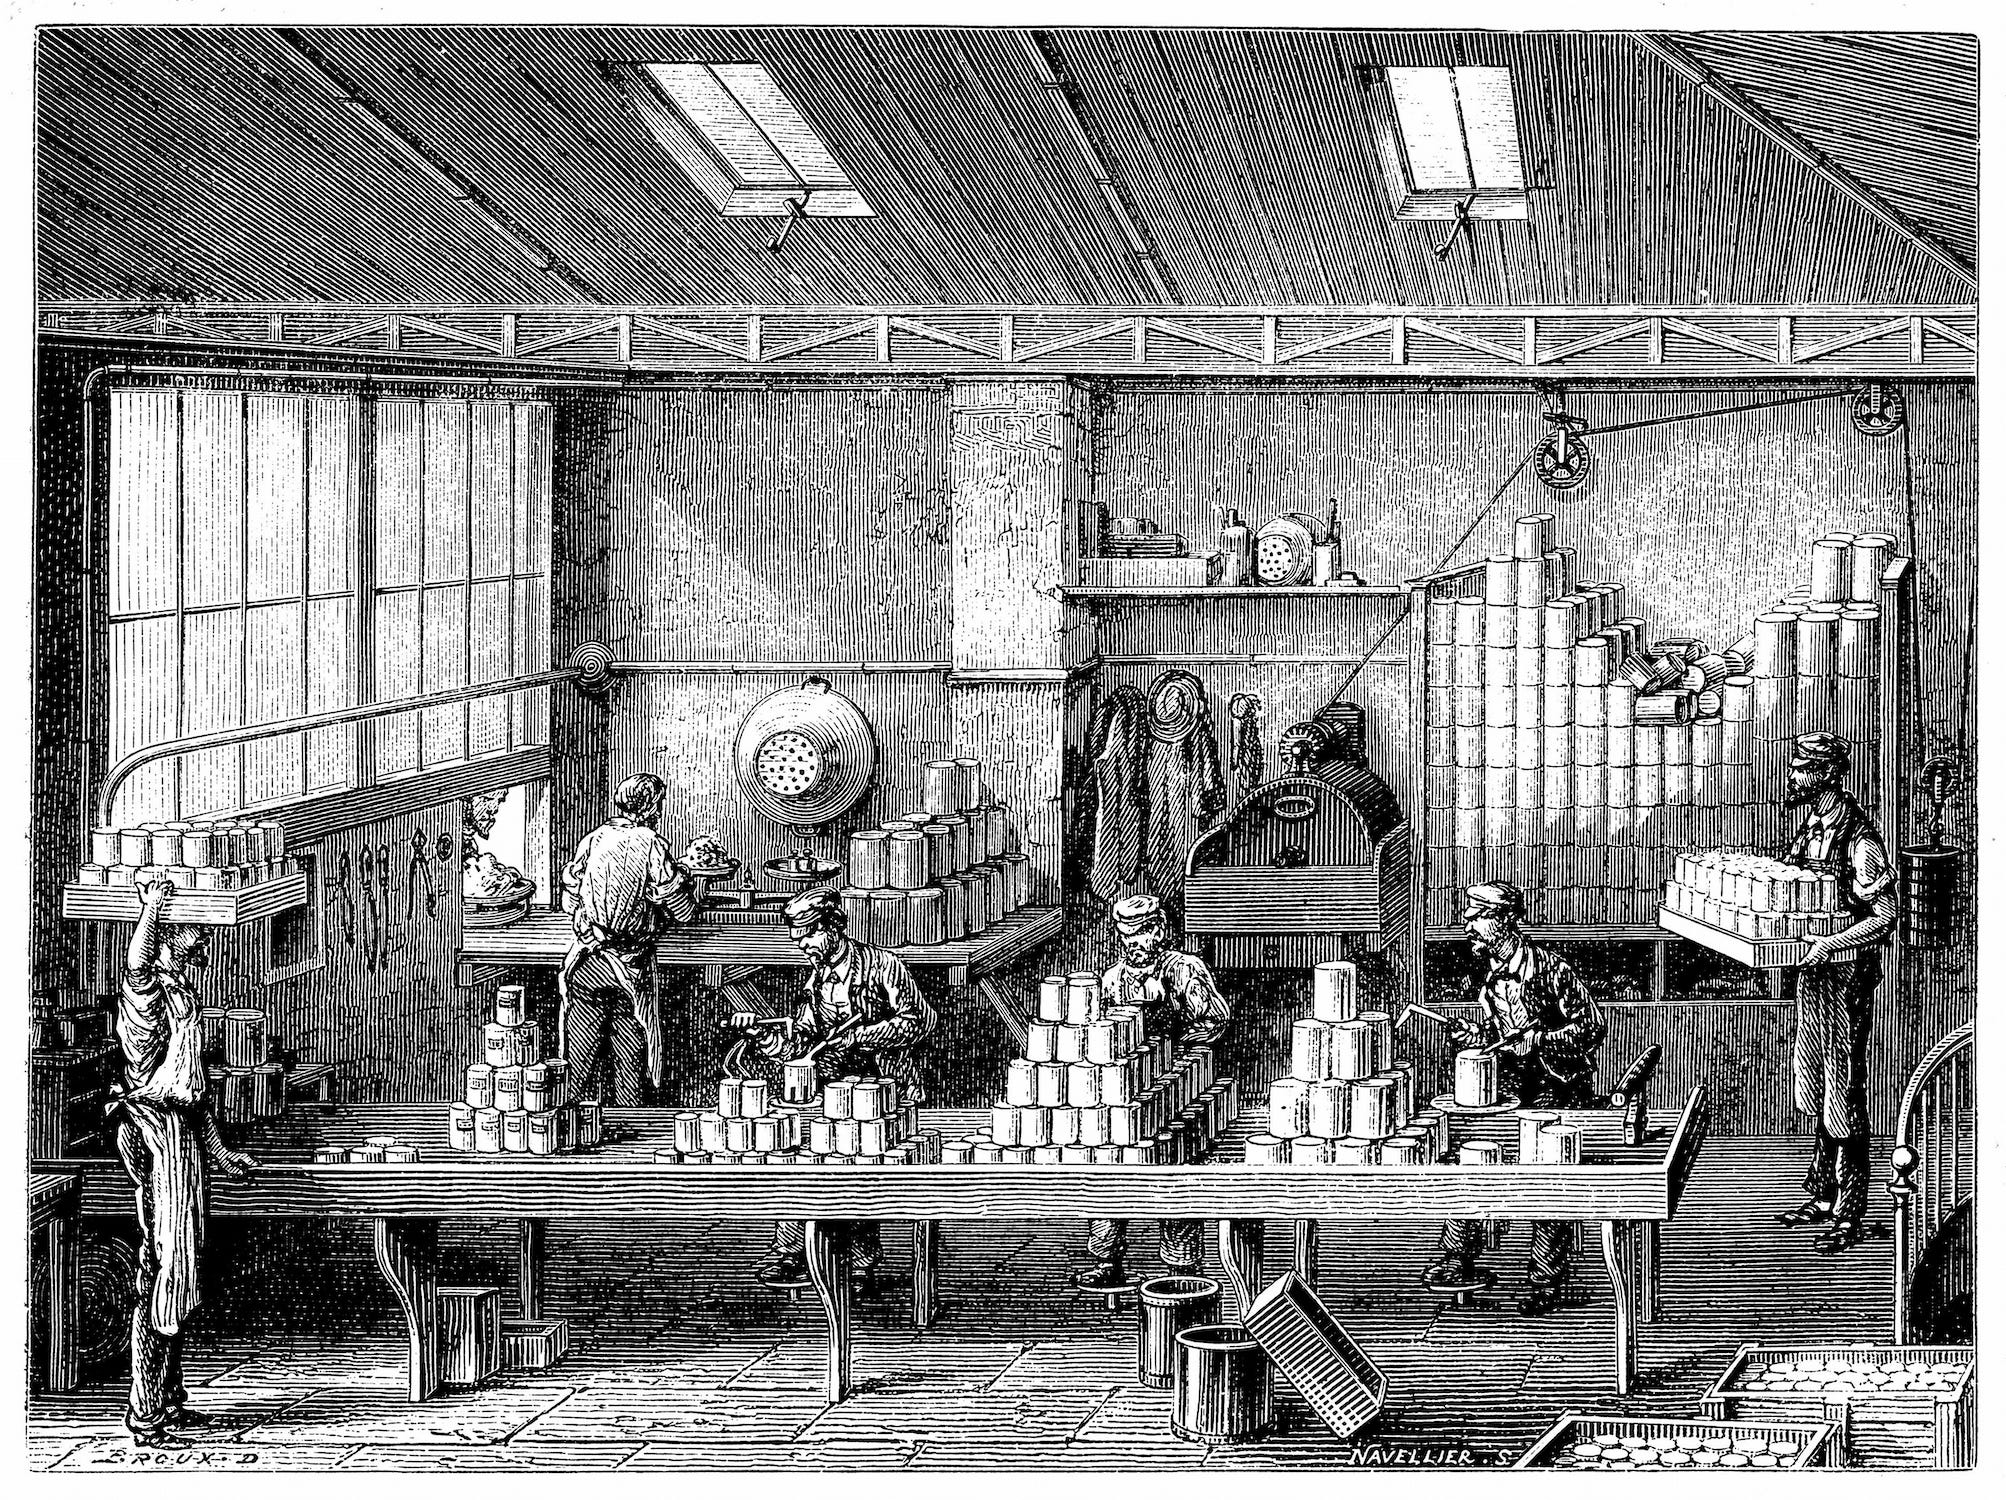 Ein Stich aus dem 18. Jahrhundert, der mehrere Personen zeigt, die in einer Fabrik Lebensmitteldosen füllen und löten